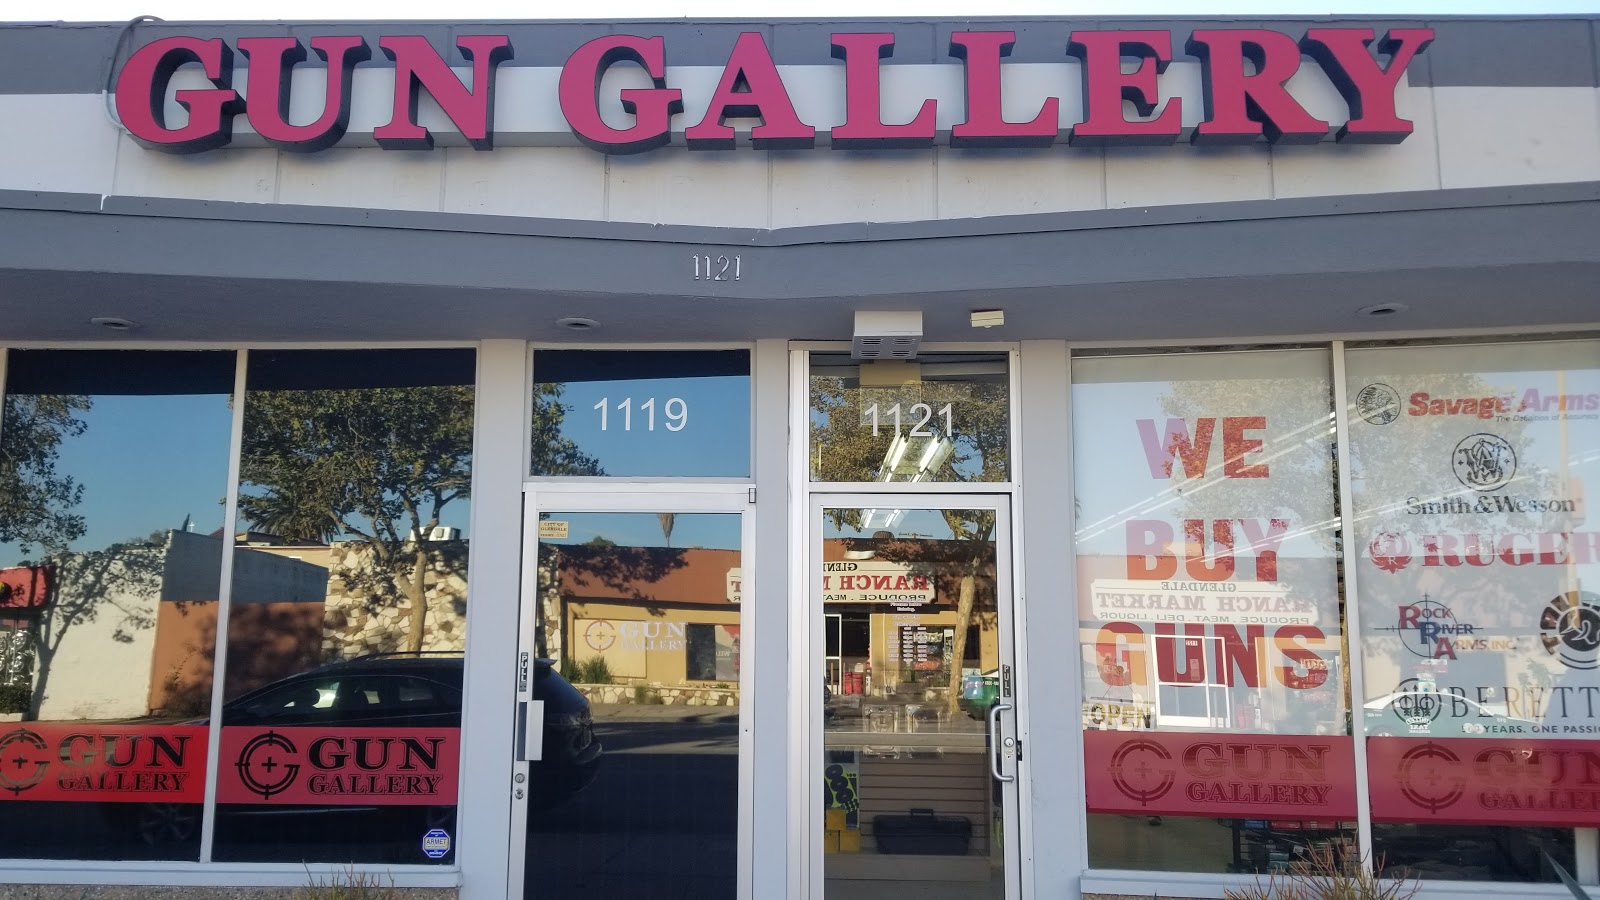 Member Gun Gallery Inc. in Glendale CA